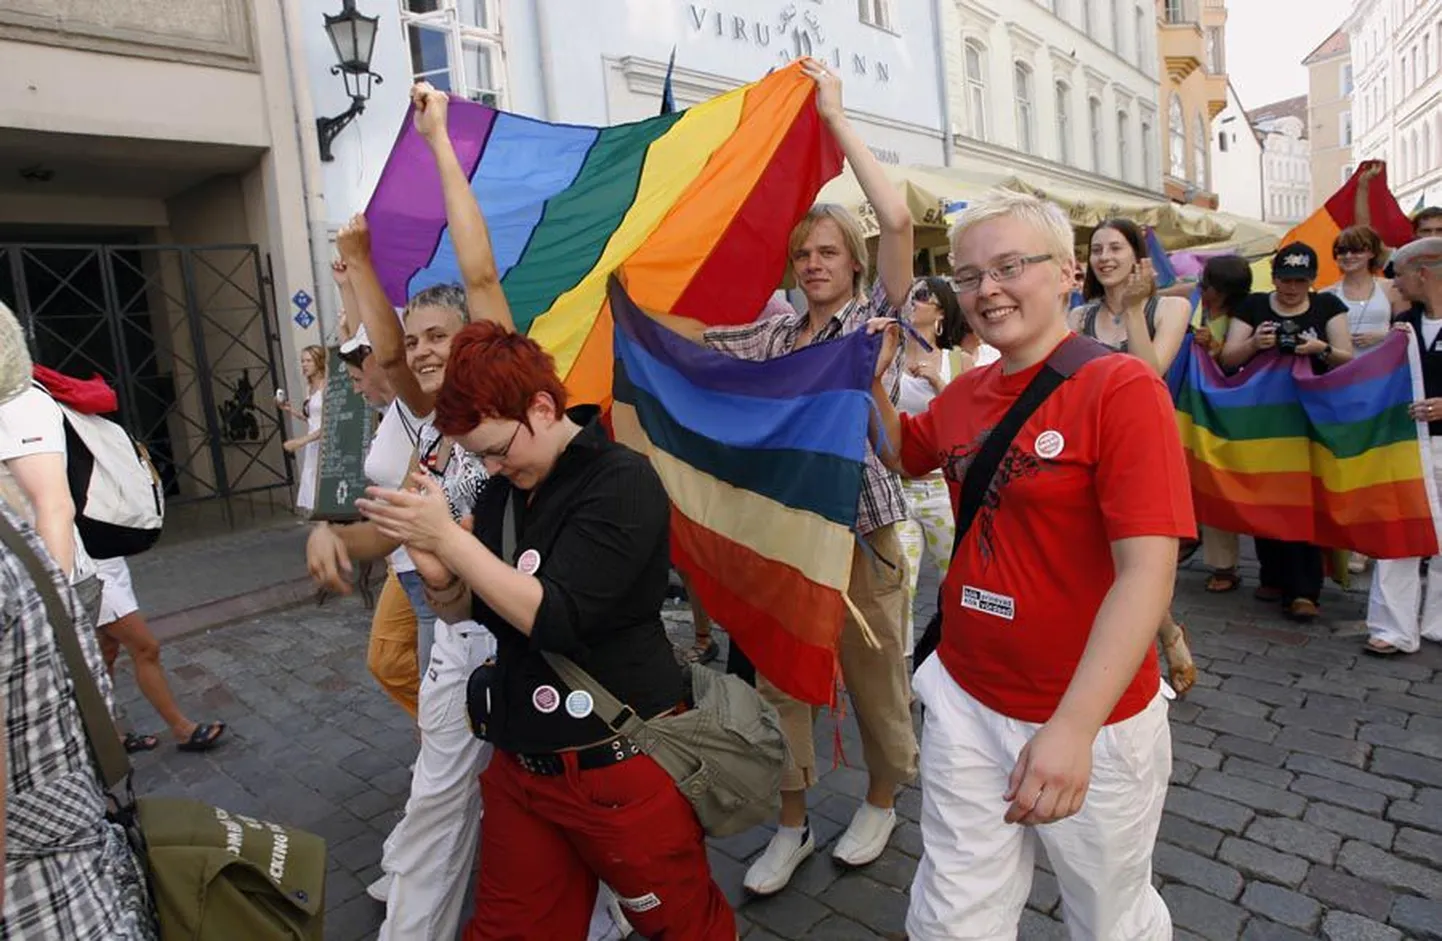 Eestiski on homoseksuaalid oma meelsust avaldanud. Pilt on tehtud 2007. aasta homoparaadilt Tallinnas.